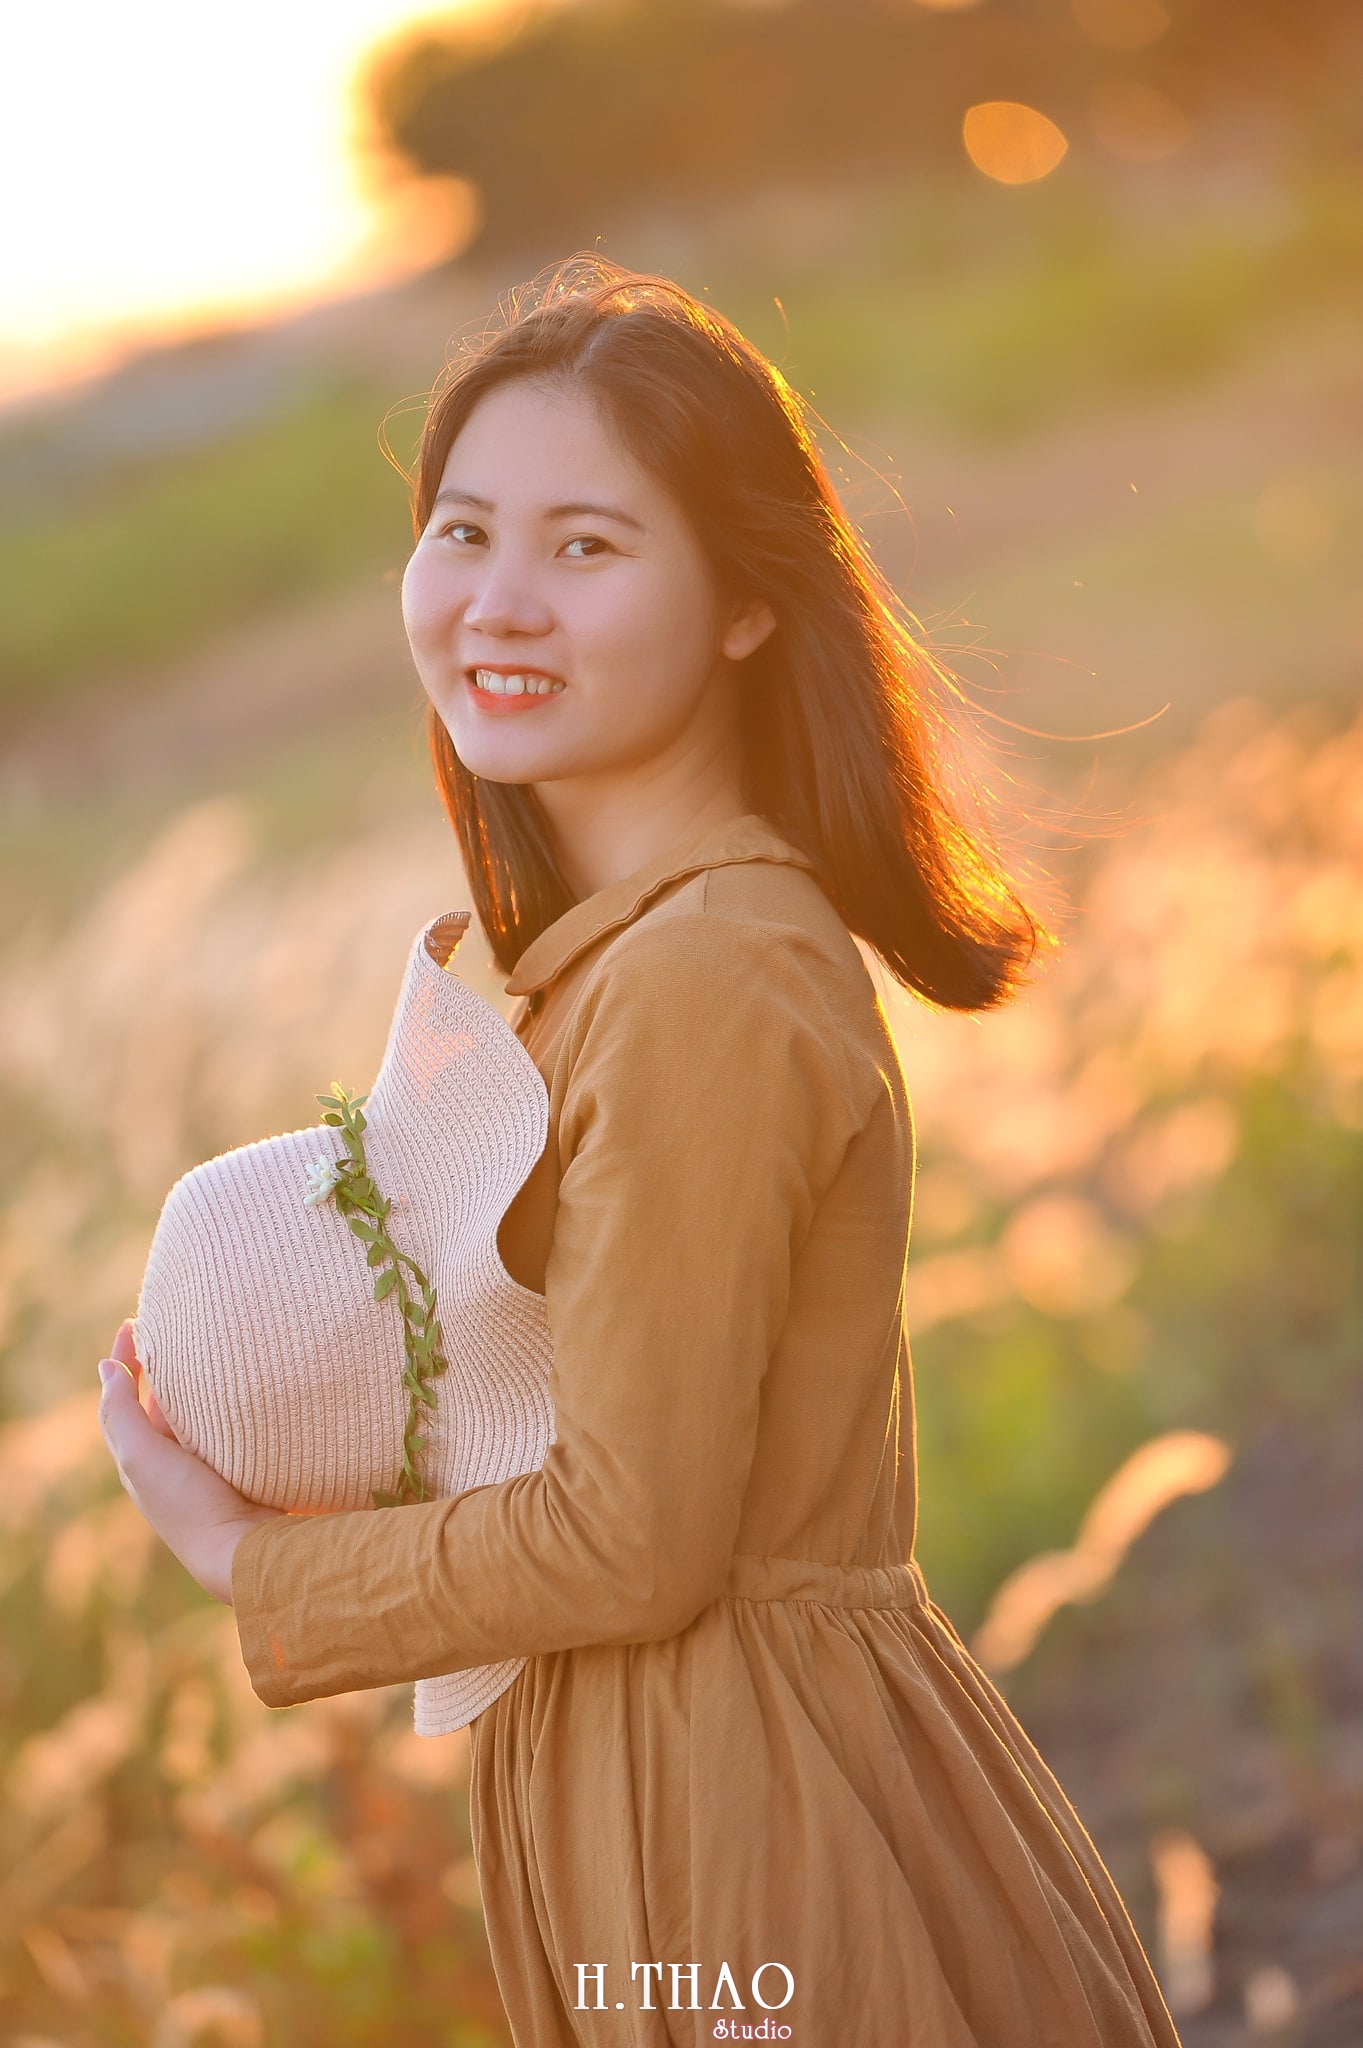 Co lau quan 9 3 min - Album ảnh chân dung nghệ thuật ngược nắng đẹp lung linh - HThao Studio